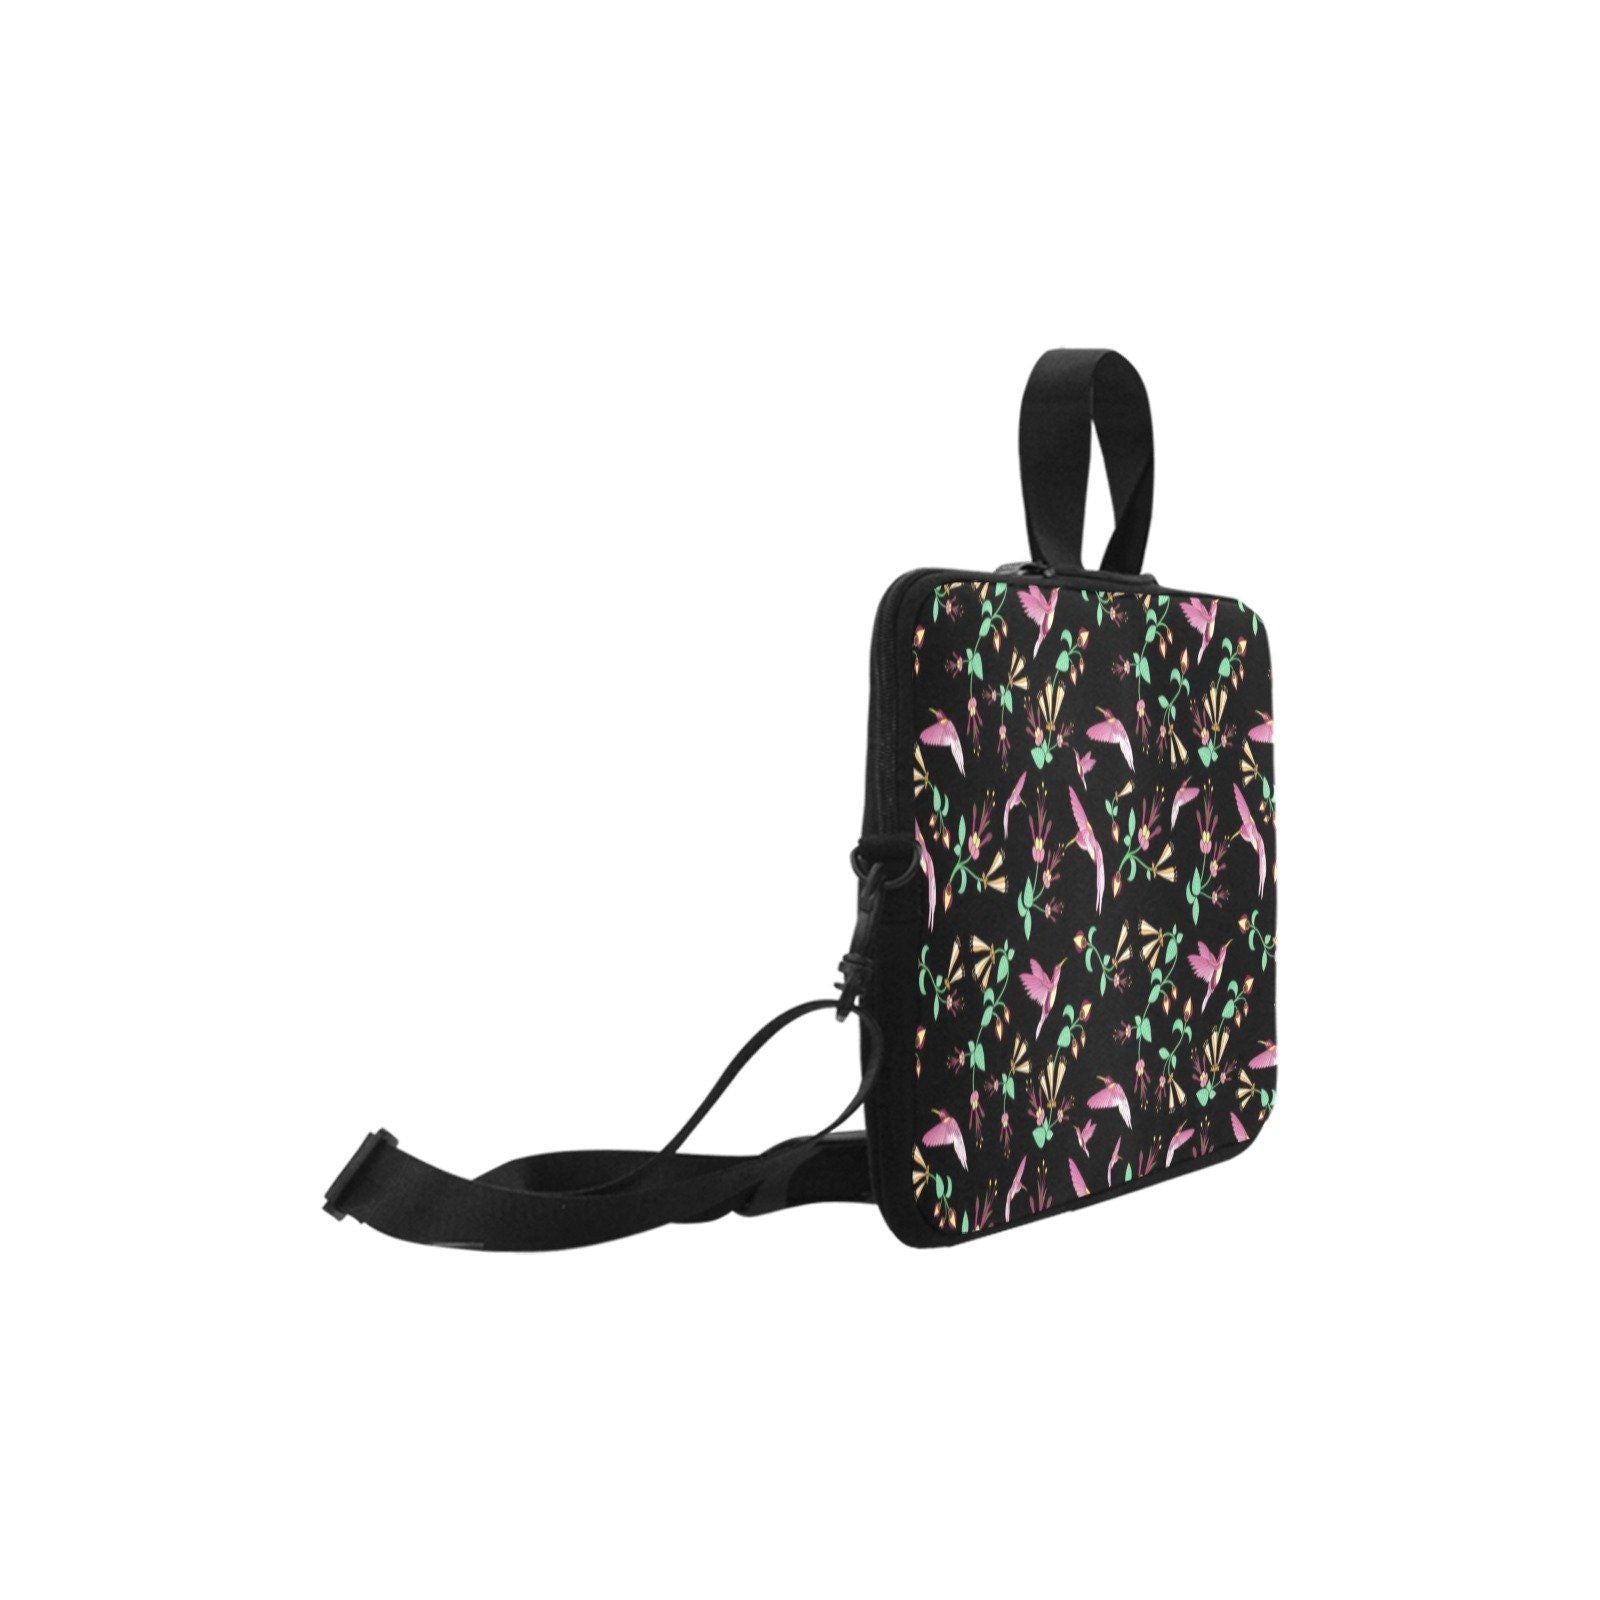 Swift Noir Laptop Handbags 11" bag e-joyer 